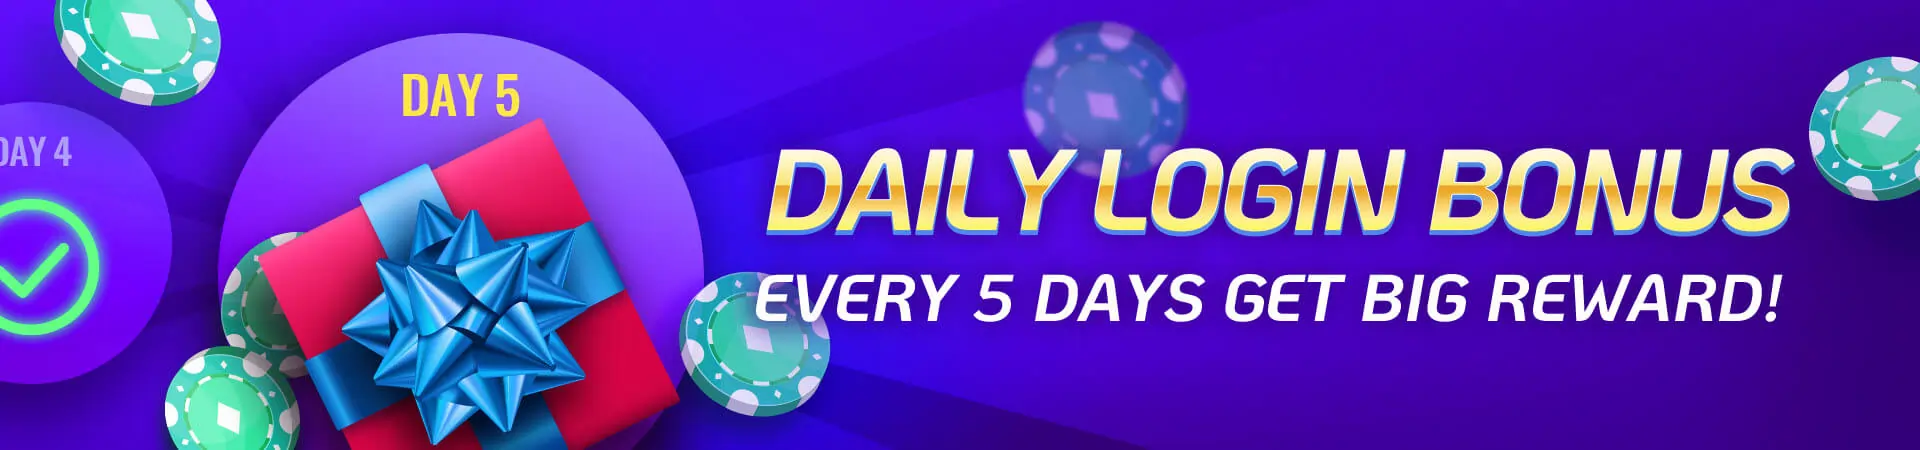 YE7 Daily login Bonus